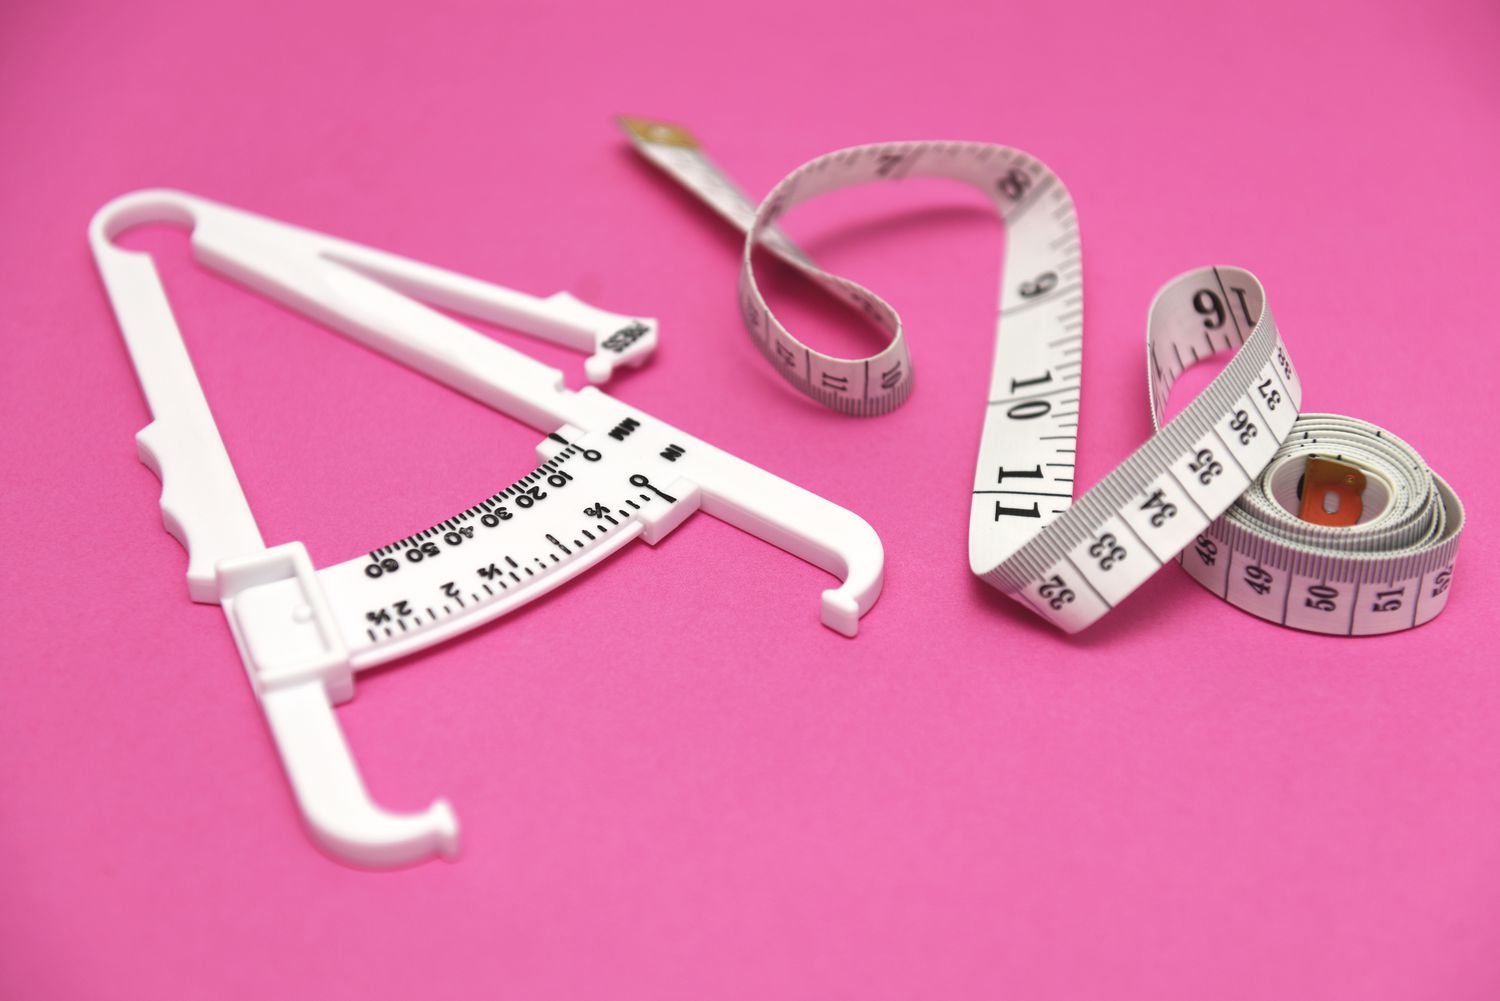 BMI meten met behulp van remklauw en meetlint